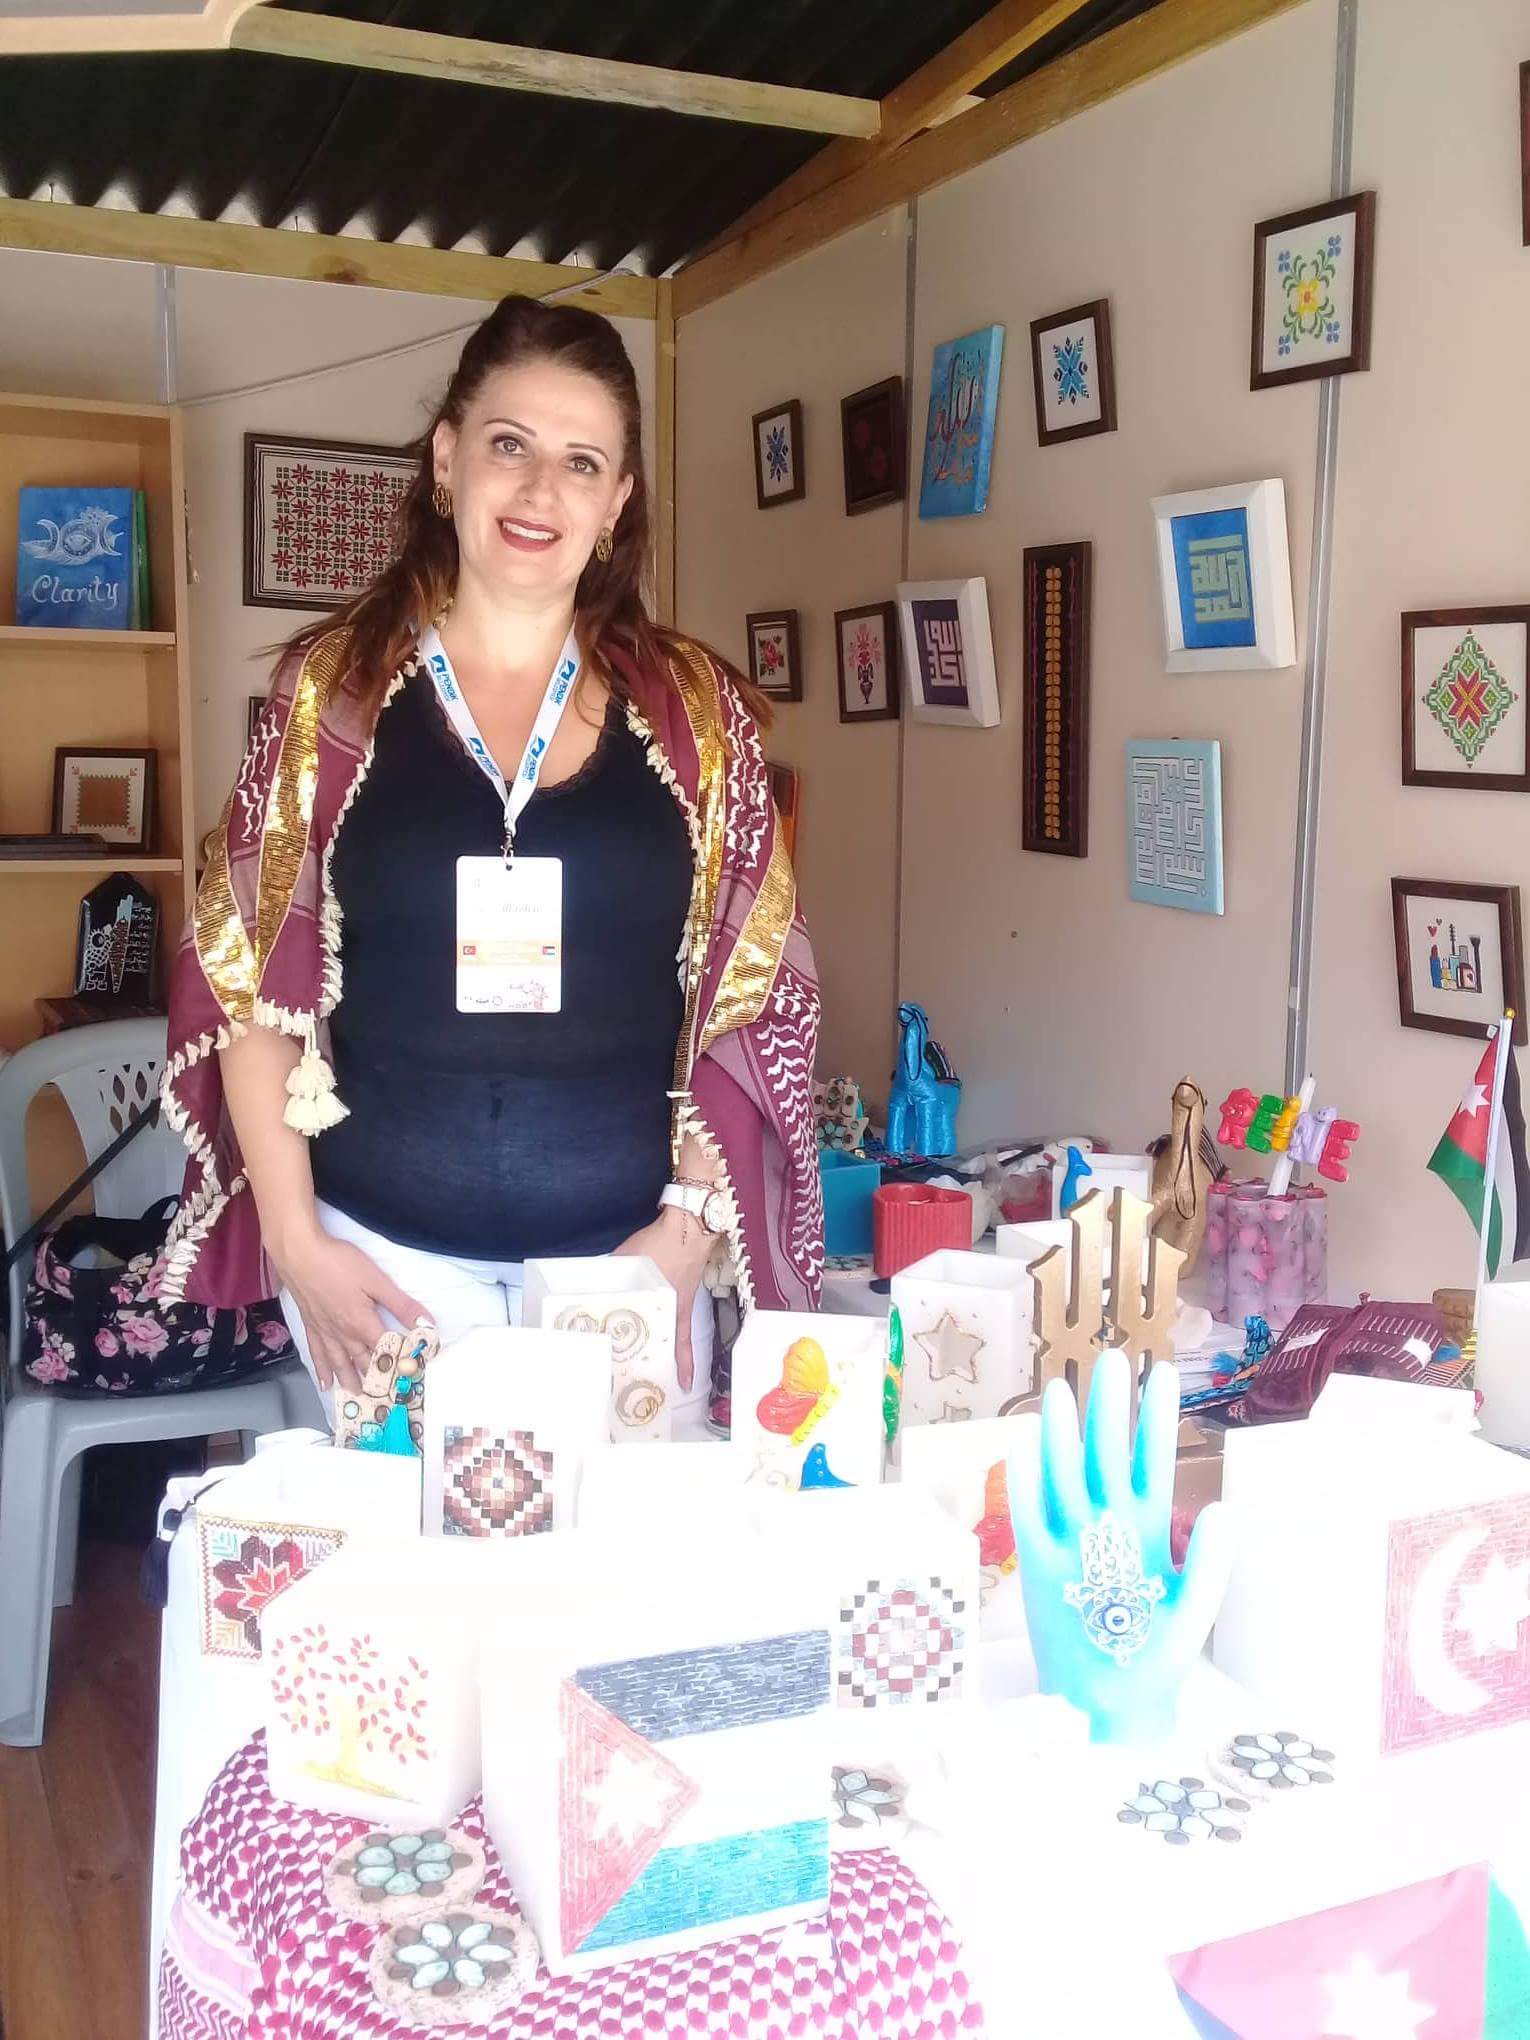 شاركت الفنانة الاردنية داليا بطشون في معرض لقاء الفنانين الرابع عشر الذي اقيم بتركيا في مدينة بندك من خلال ركن اردني يشتمل على العديد من المقتنيات الت